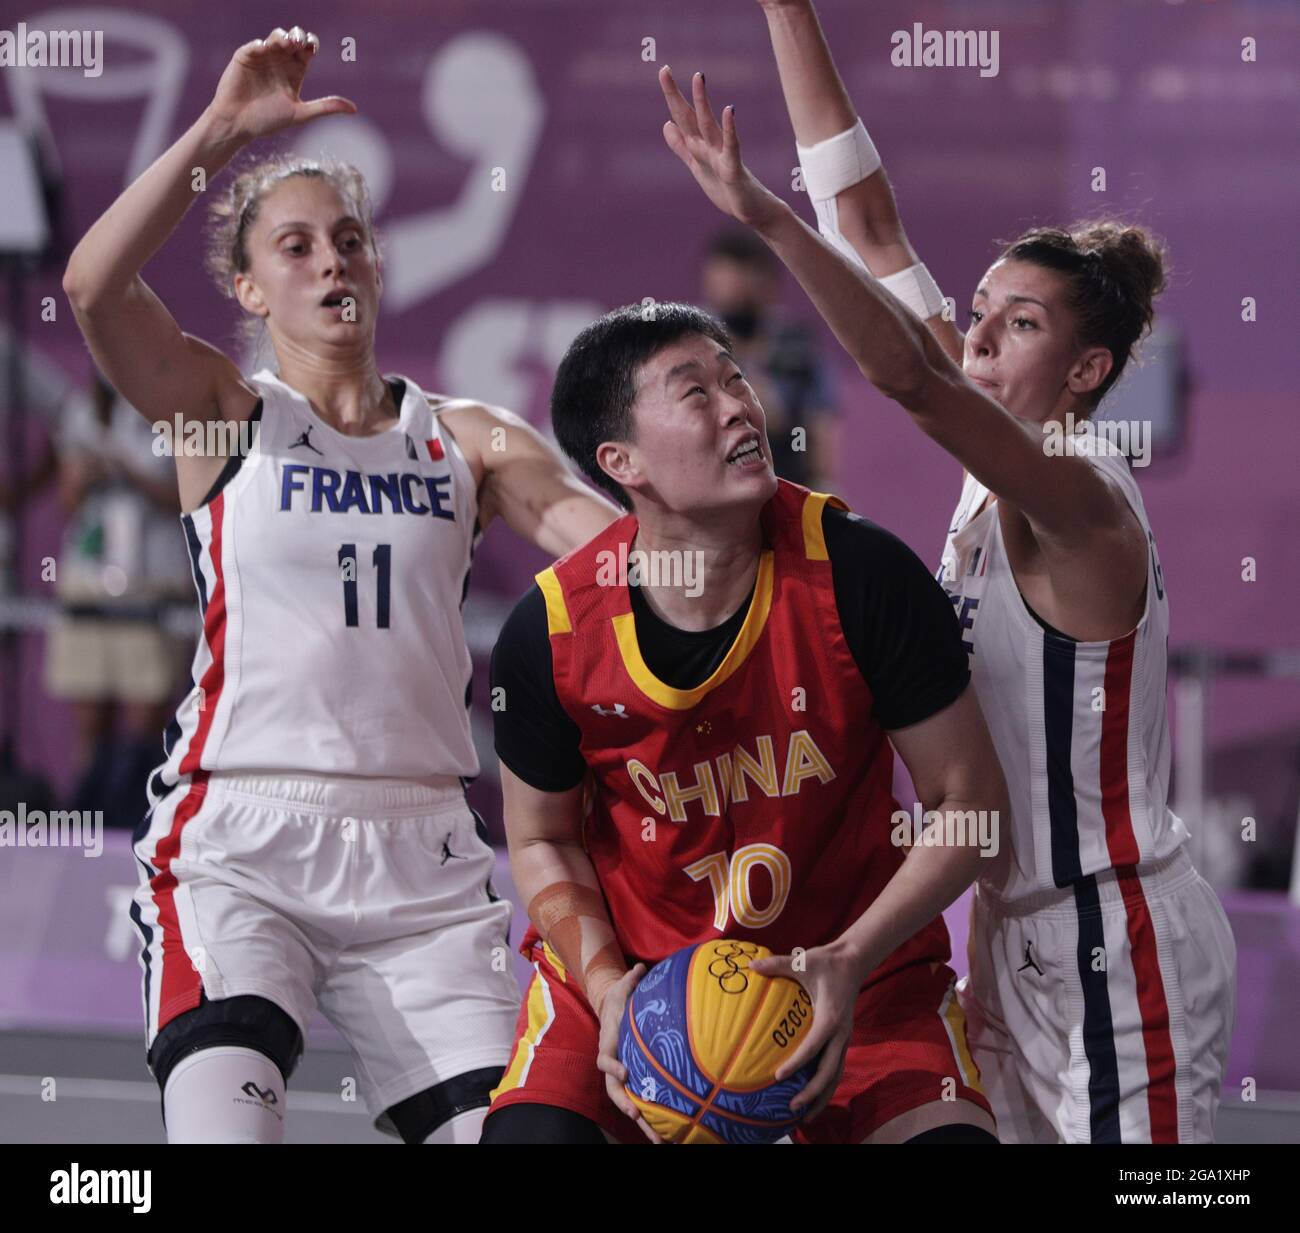 Tokio, Japón. 28th de julio de 2021. La china Zhiting Zhang (10) está custodiada por Ana Maria Filip de Francia (11) y Laetitia Guapo durante el juego de la medalla de bronce femenino DE baloncesto 3X3 en los Juegos Olímpicos de Verano de Tokio, en Tokio, Japón, el miércoles 28 de julio de 2021. China ganó el juego para tomar la medalla de bronce. Foto de Bob Strong/UPI. Crédito: UPI/Alamy Live News Foto de stock